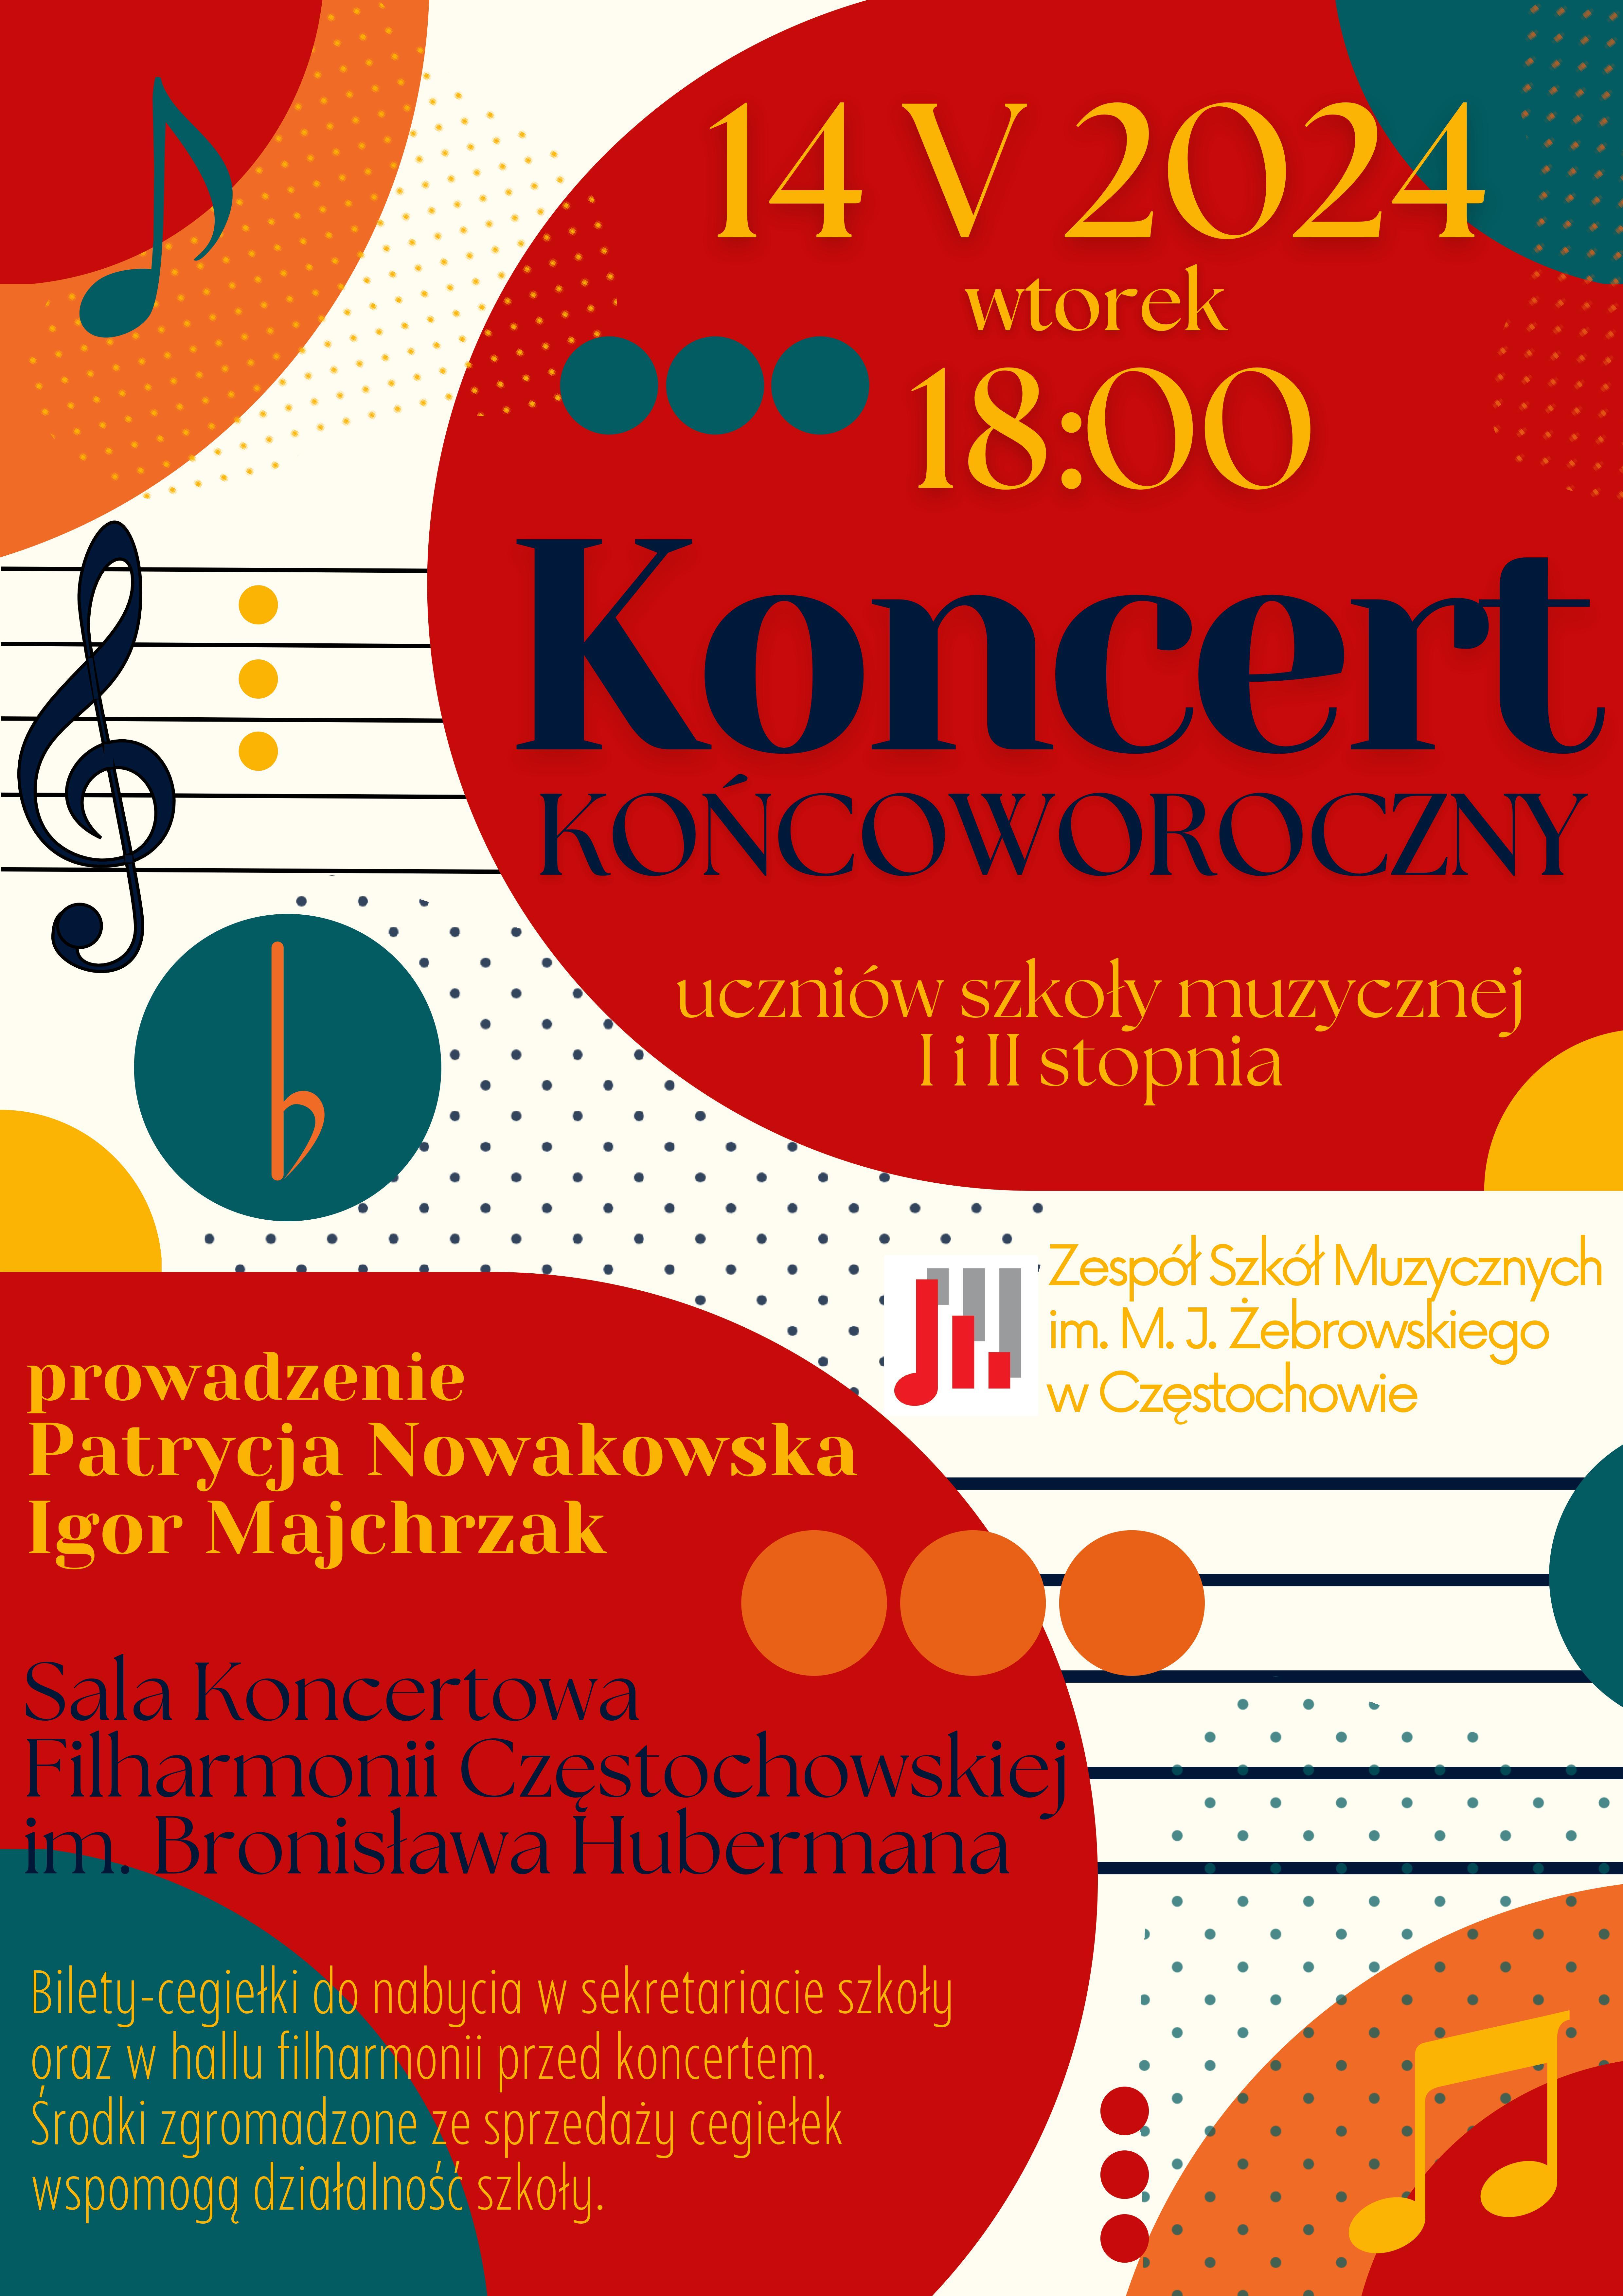 Kolorowe tło, namalowana pięciolinia, klucze, informacje dotyczące koncertu końcoworocznego w filharmonii 14 maja 2024 r.